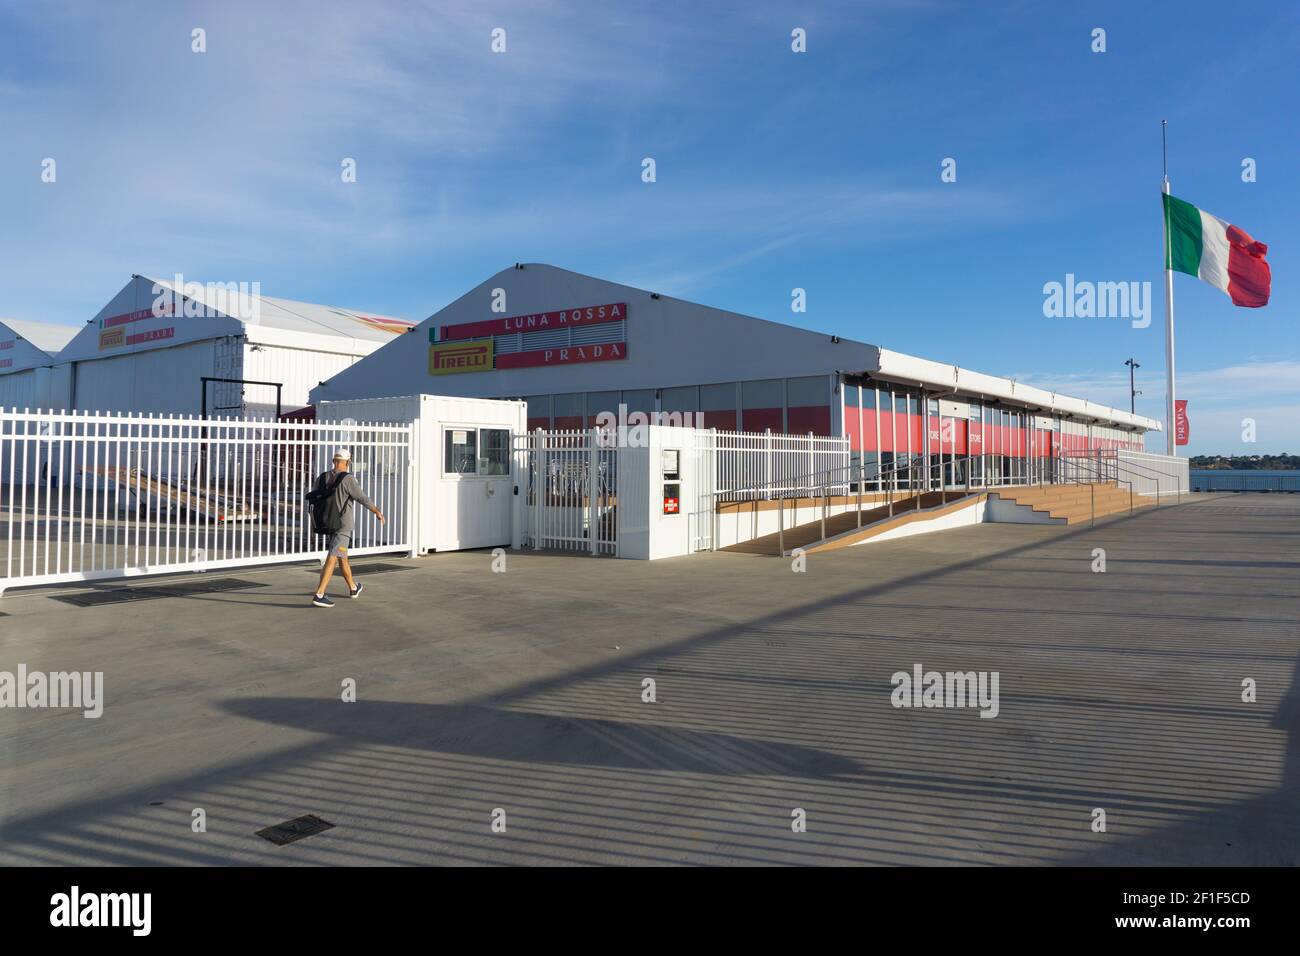 Auckland, Nuova Zelanda 2021. Base del sindacato Luna Rossa Prada Pirelli durante il blocco di allarme di livello 3. Foto Stock